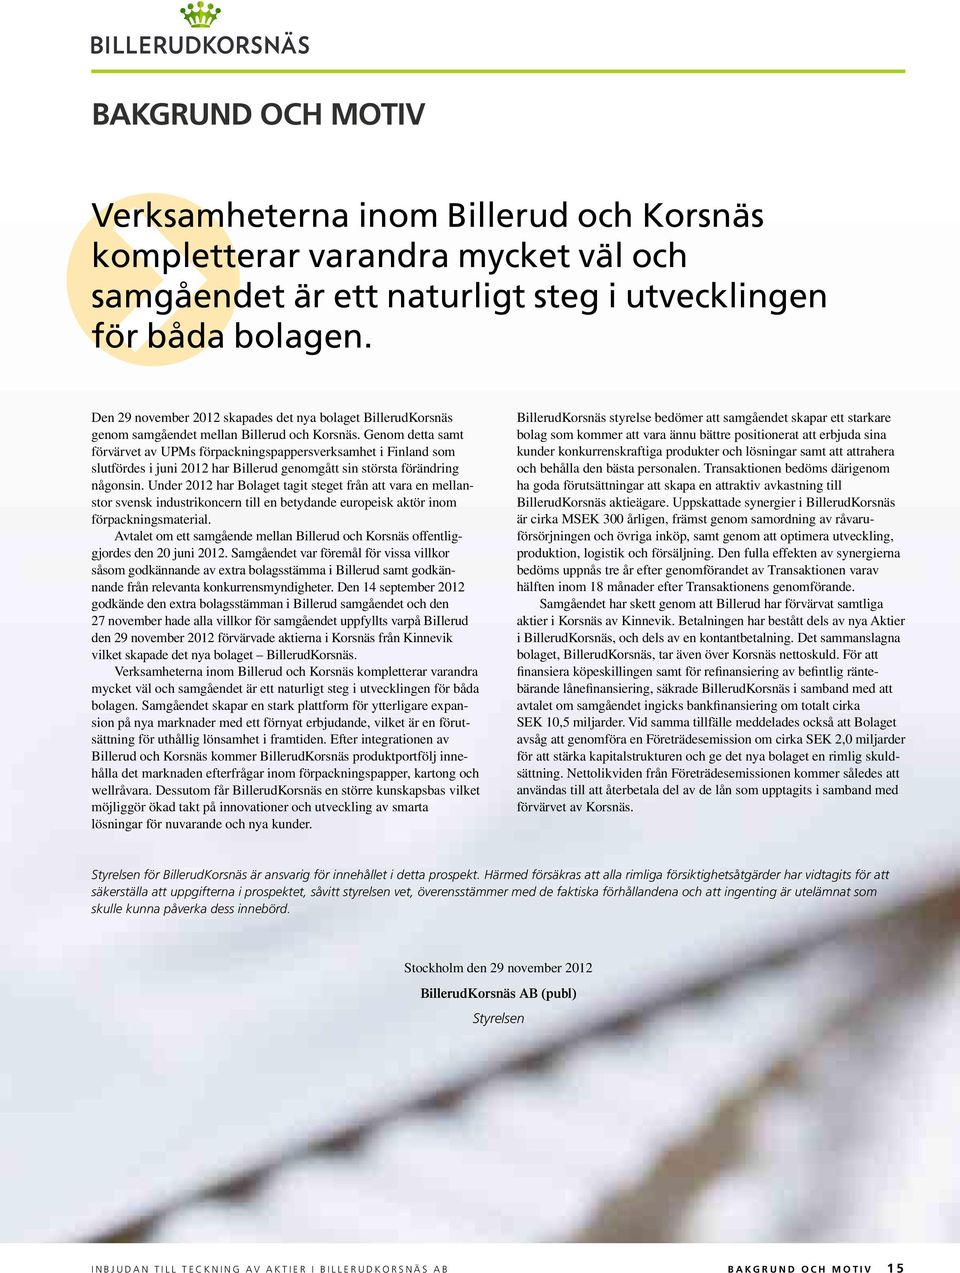 Genom detta samt förvärvet av UPMs förpackningspappersverksamhet i Finland som slutfördes i juni 2012 har Billerud genomgått sin största förändring någonsin.